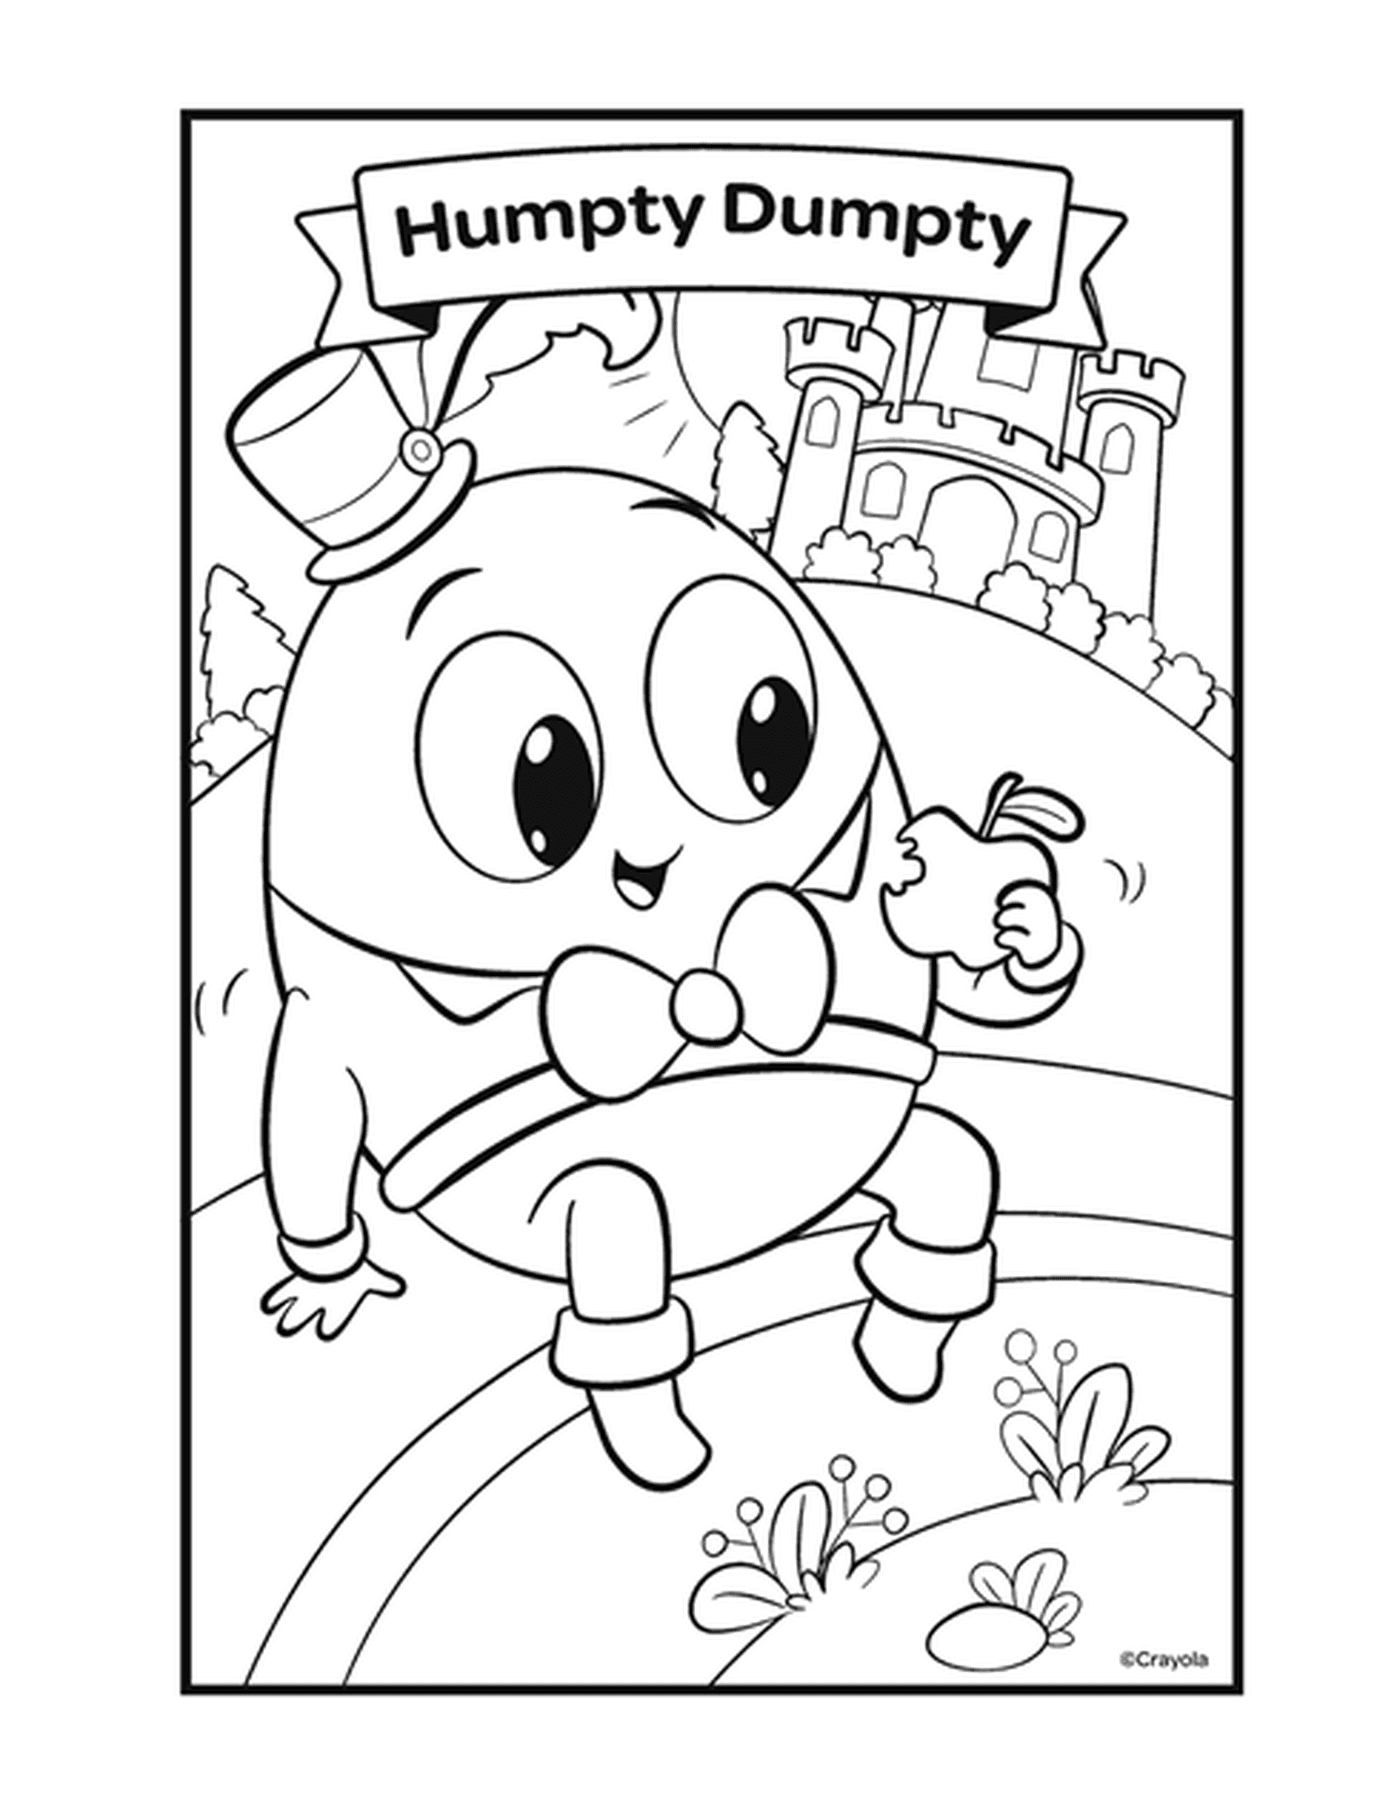   La comptine Humpty Dumpty avec un personnage en forme d'œuf 